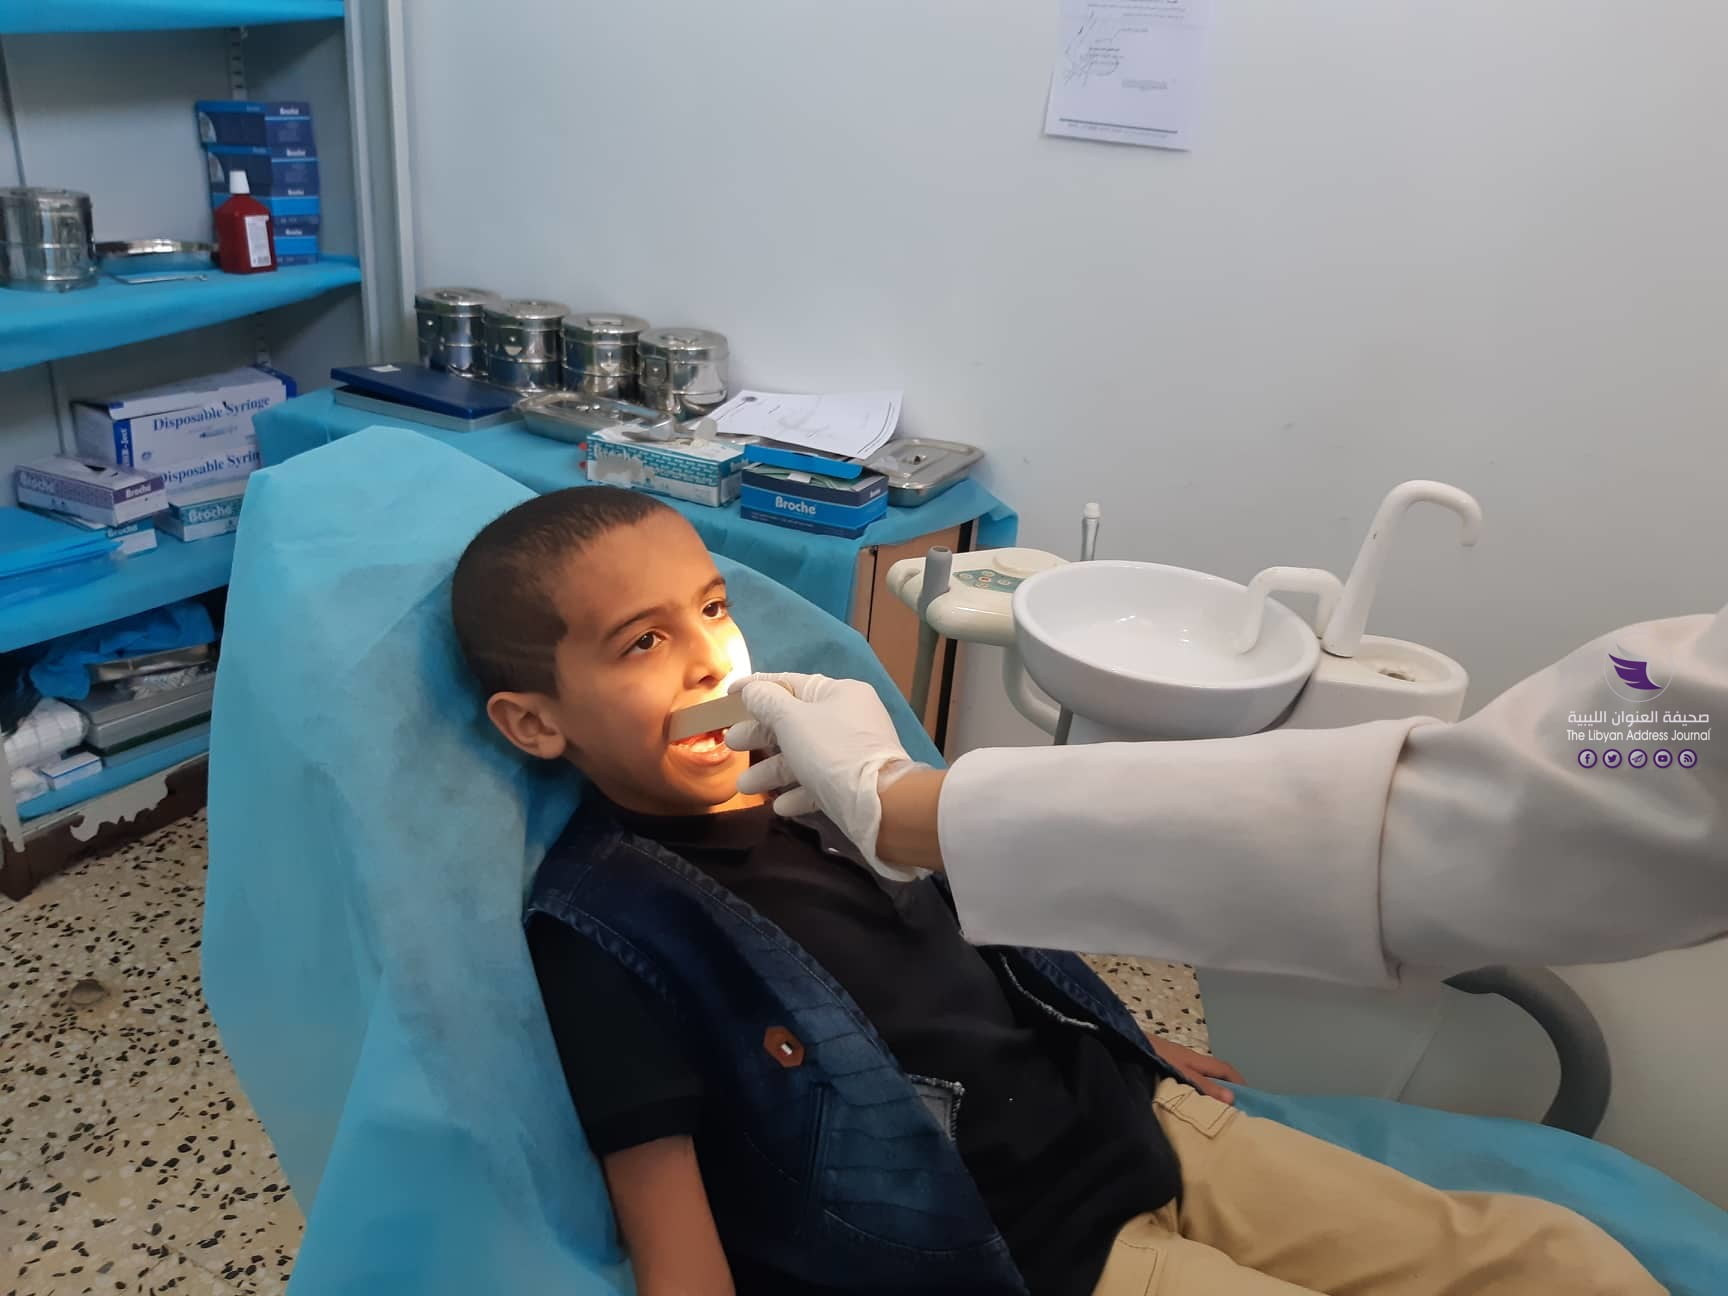 عيادة خالد بن الوليد المجمعة في بنغازي توفر خدمات طبية في عدة تخصصات - 73333457 1185804228429884 3599424525260816384 n